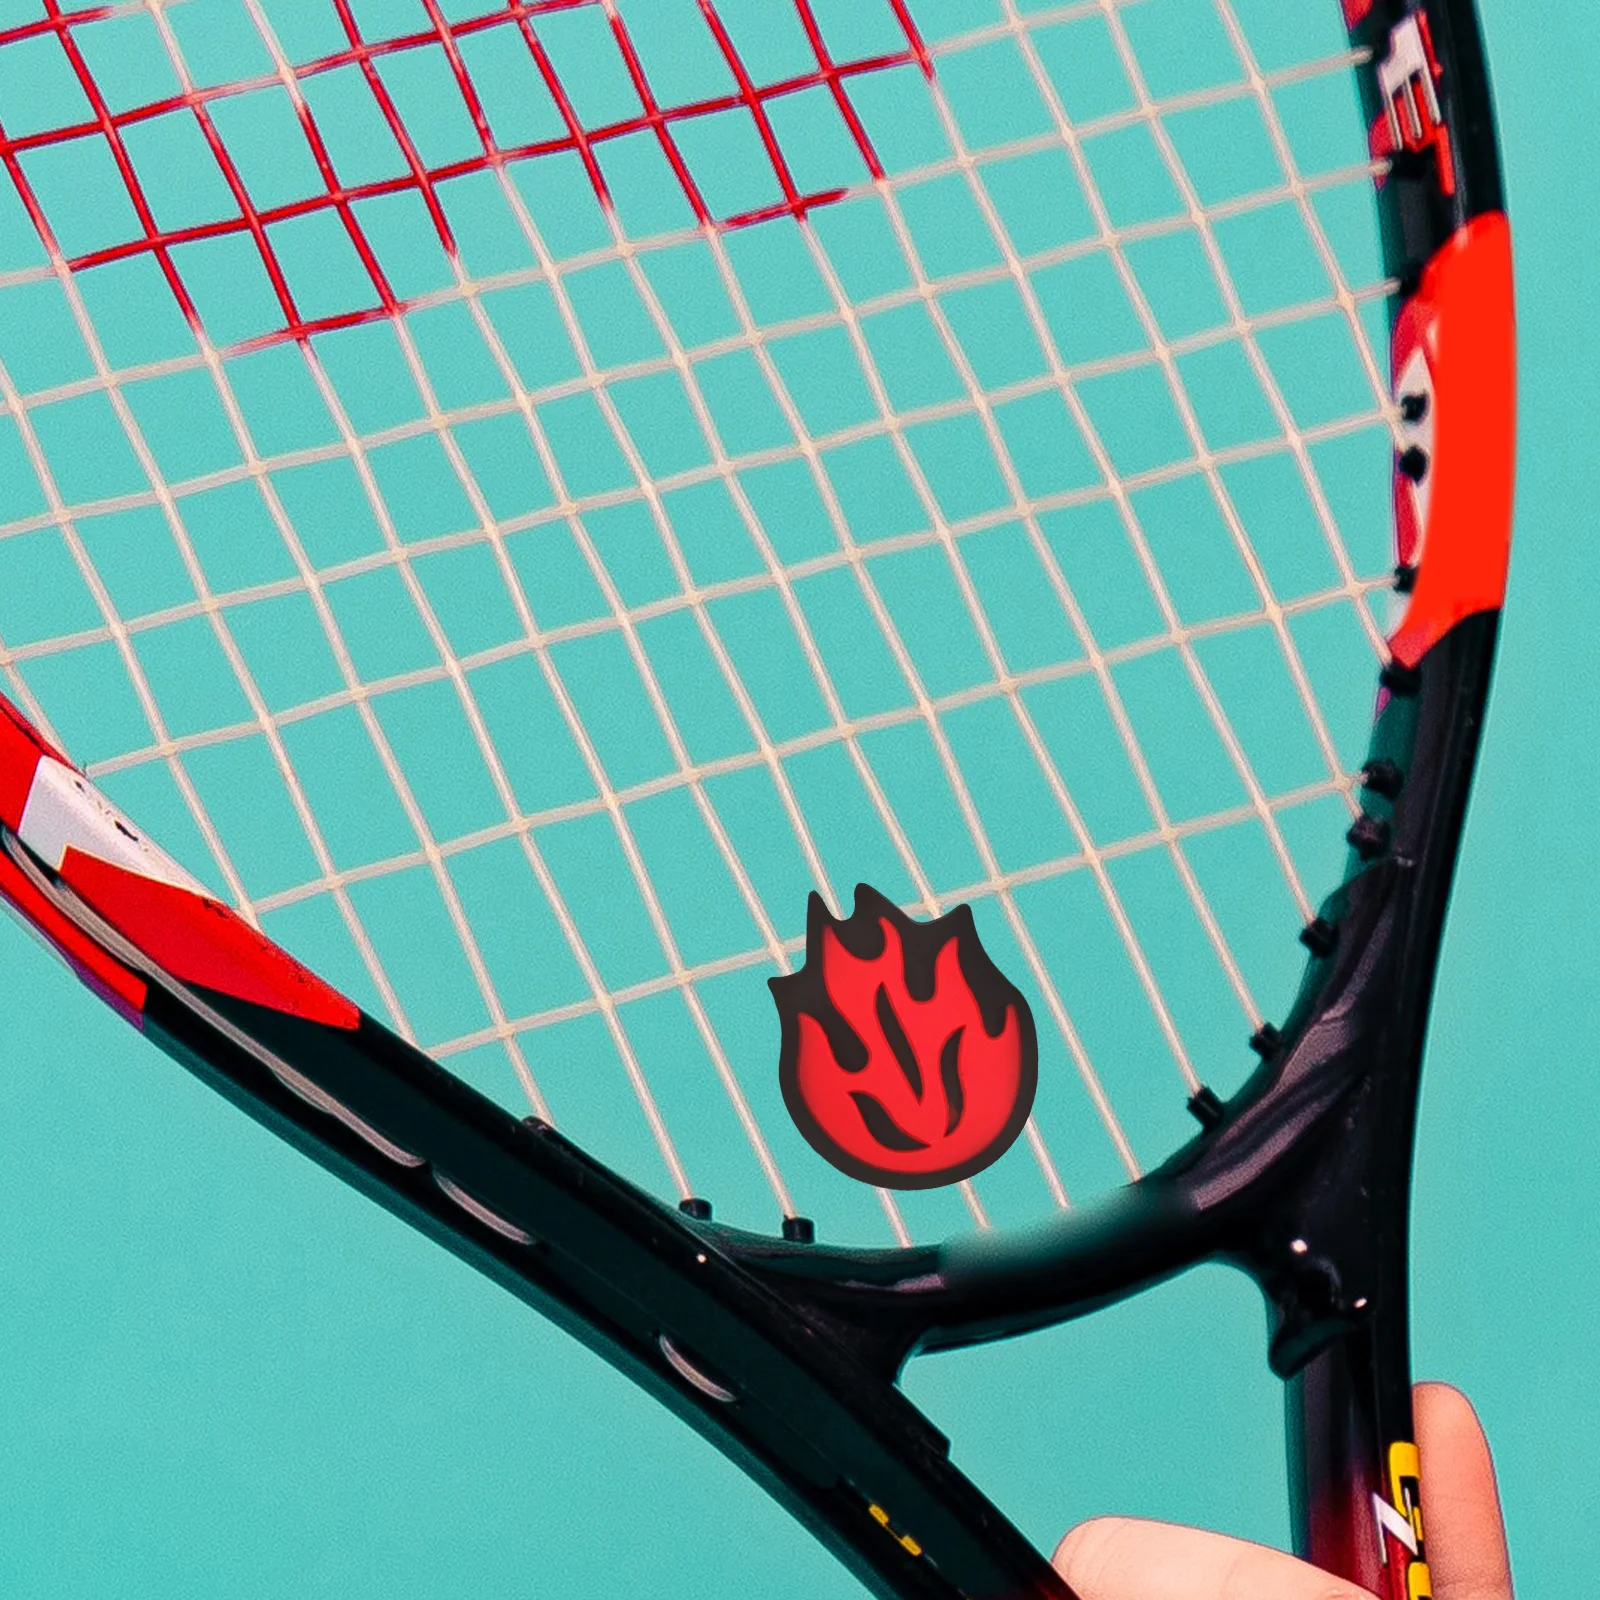 

Спортивное оборудование для тенниса и ракетки